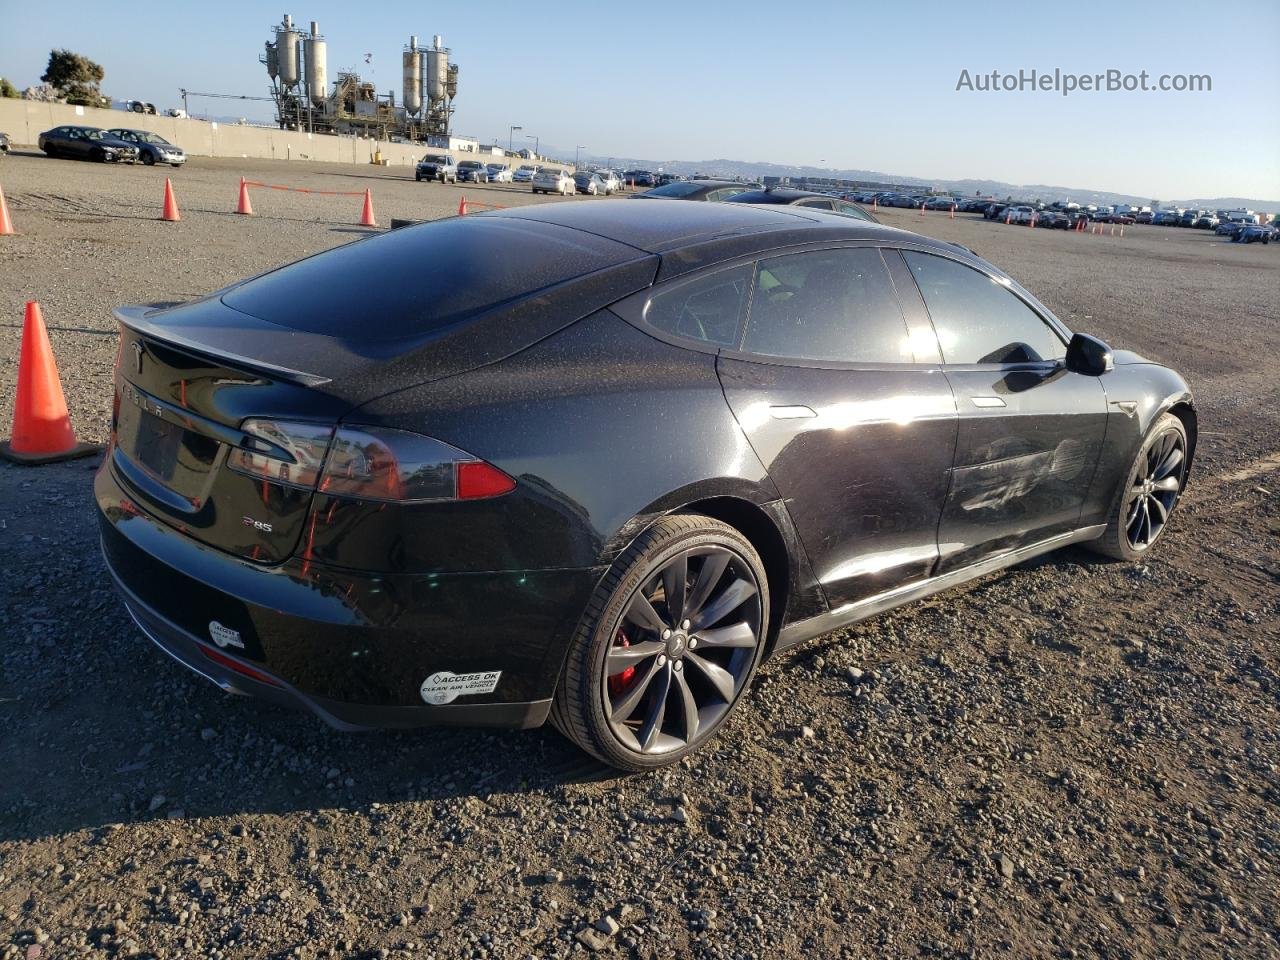 2014 Tesla Model S  Черный vin: 5YJSA1H18EFP37562